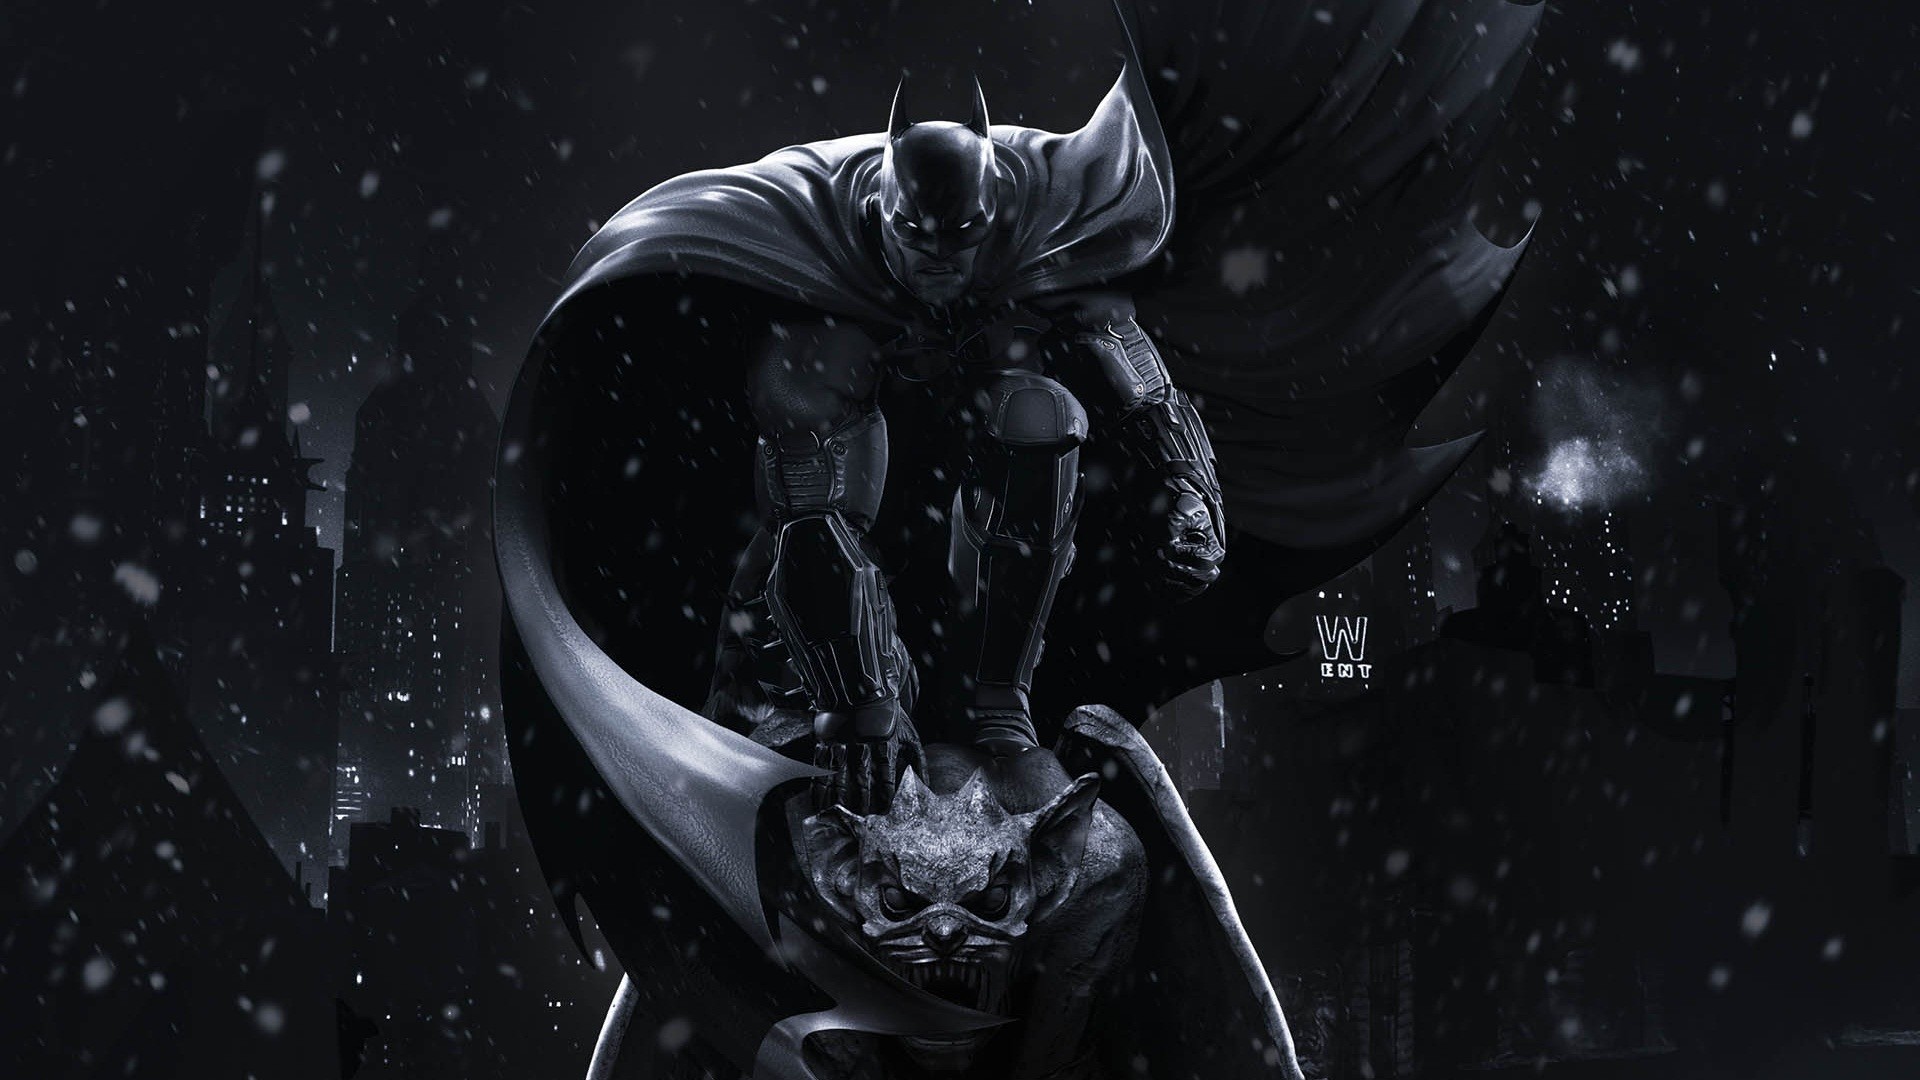 General 1920x1080 Batman The Dark Knight artwork Gotham City DC Comics digital art night dark